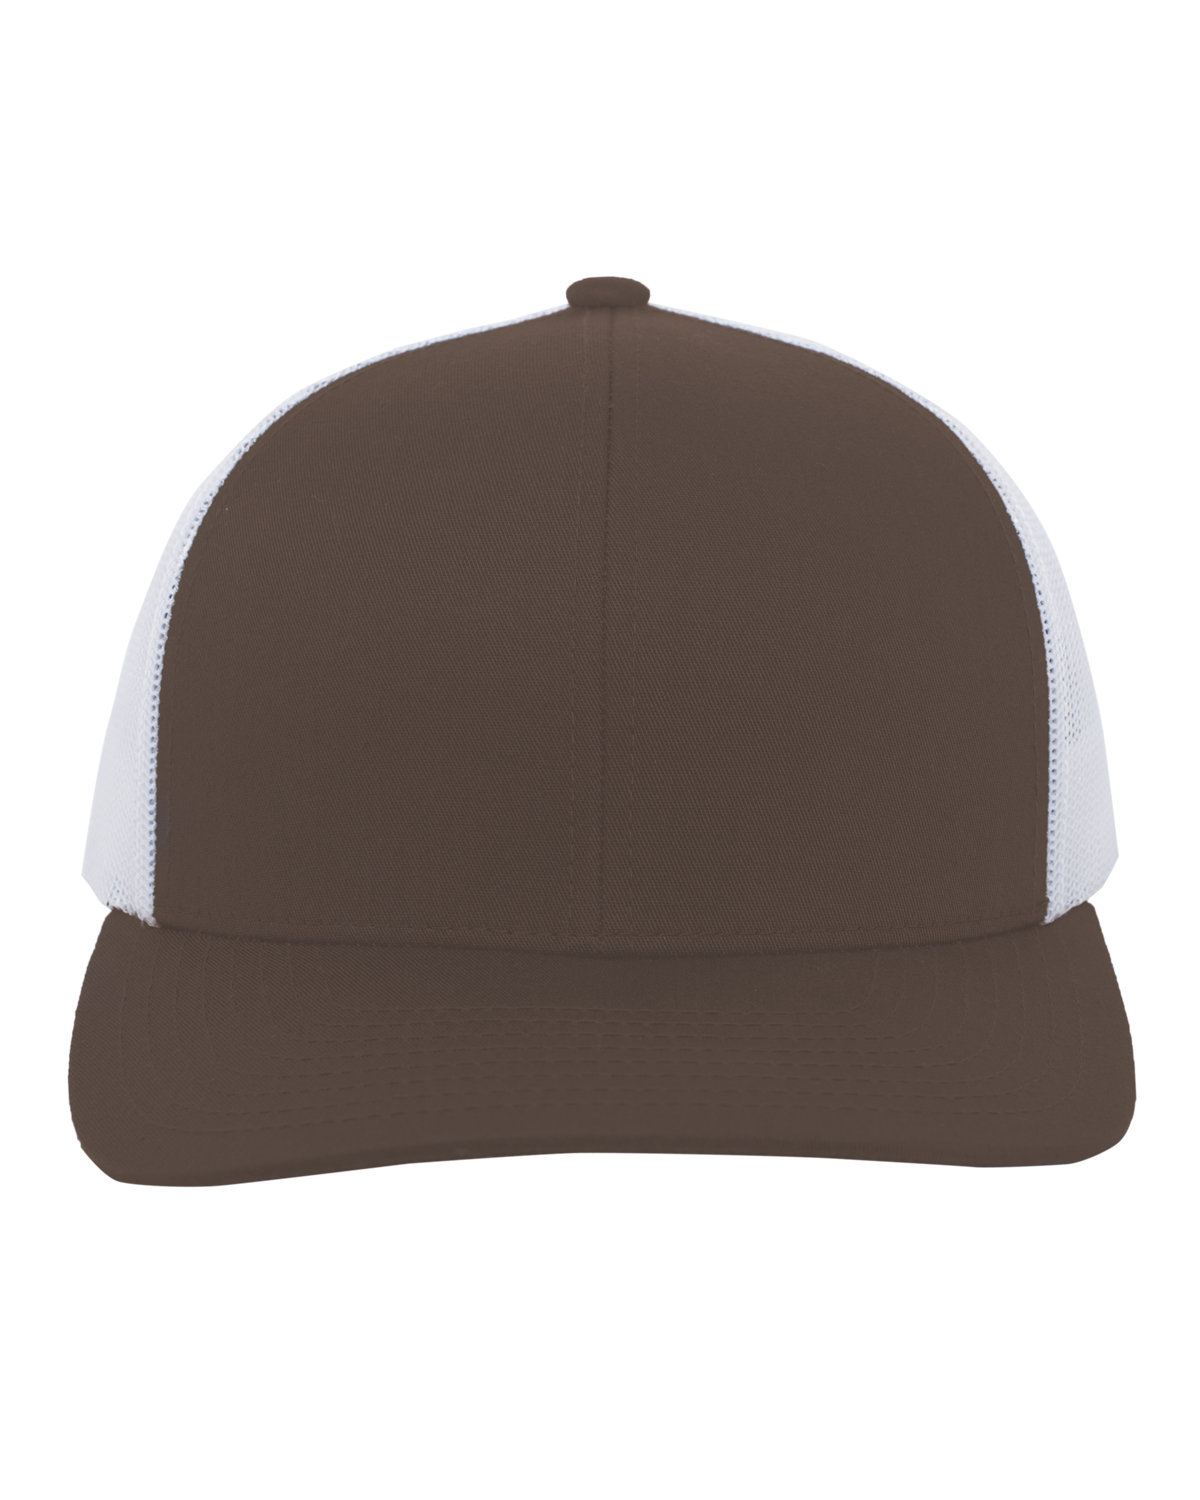 Pacific Headwear Trucker Snapback Hat BROWN/ WHITE 